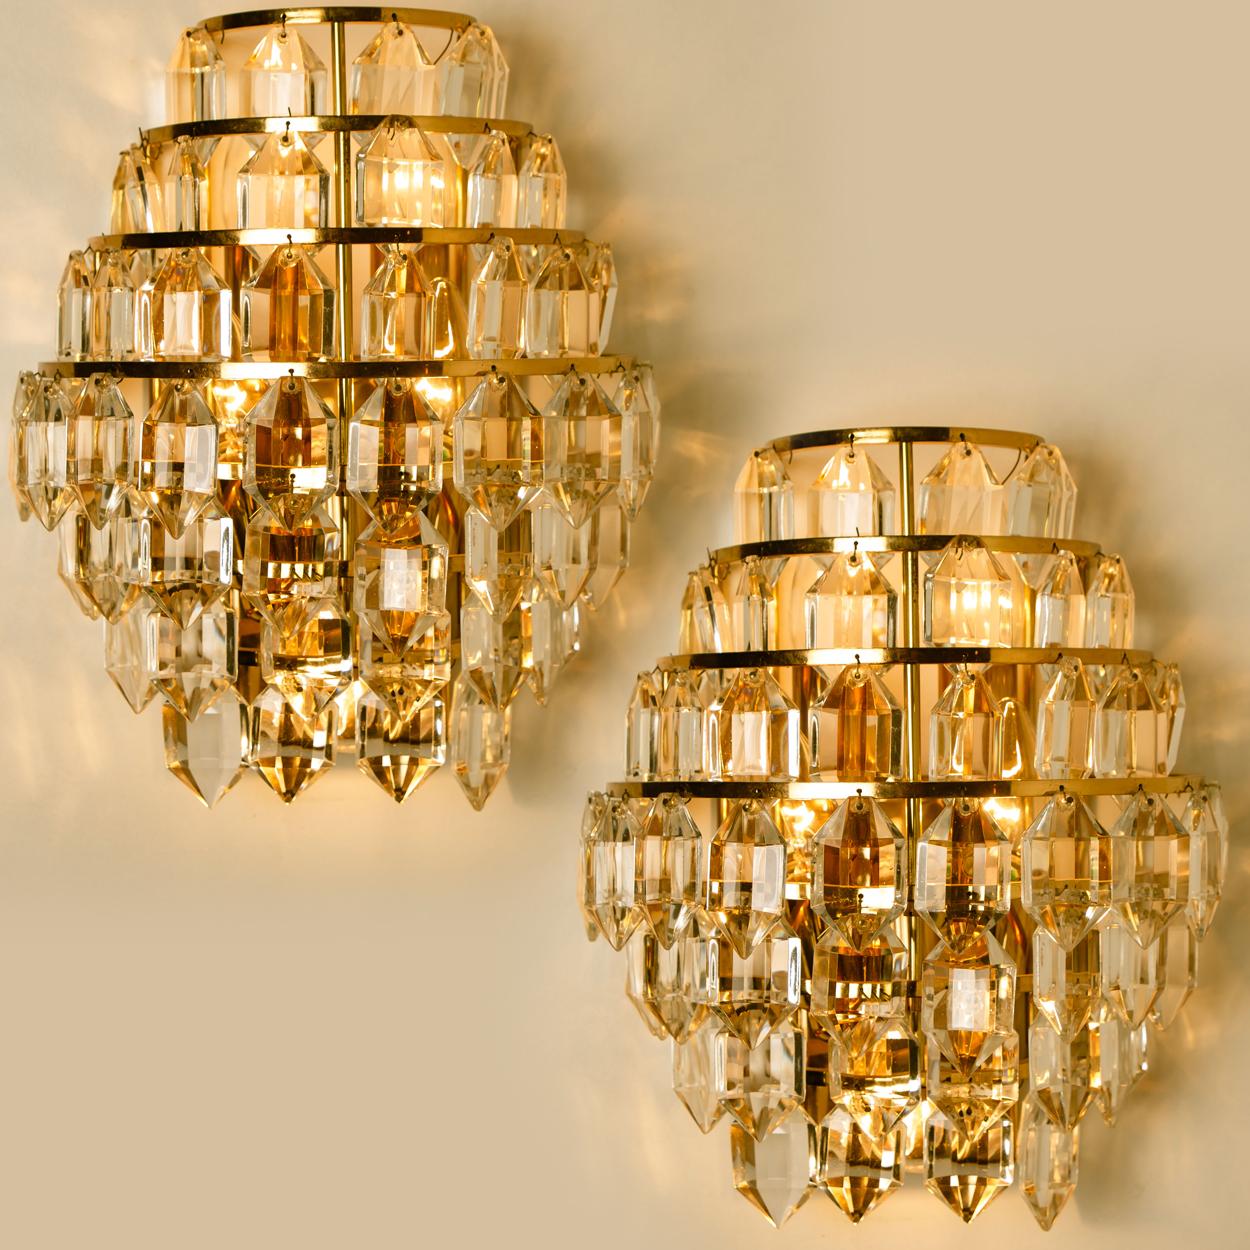 1 der 4 Wandlampen von Bakalowits, Österreich, 1960er Jahre. Ein schöner Lichteffekt durch das Kristallglas, der ein elegant funkelndes Lichtspiel im Raum verbreitet. Schönes Design und hochwertige Verarbeitung.

Die Leuchte hat einen Zugschalter,